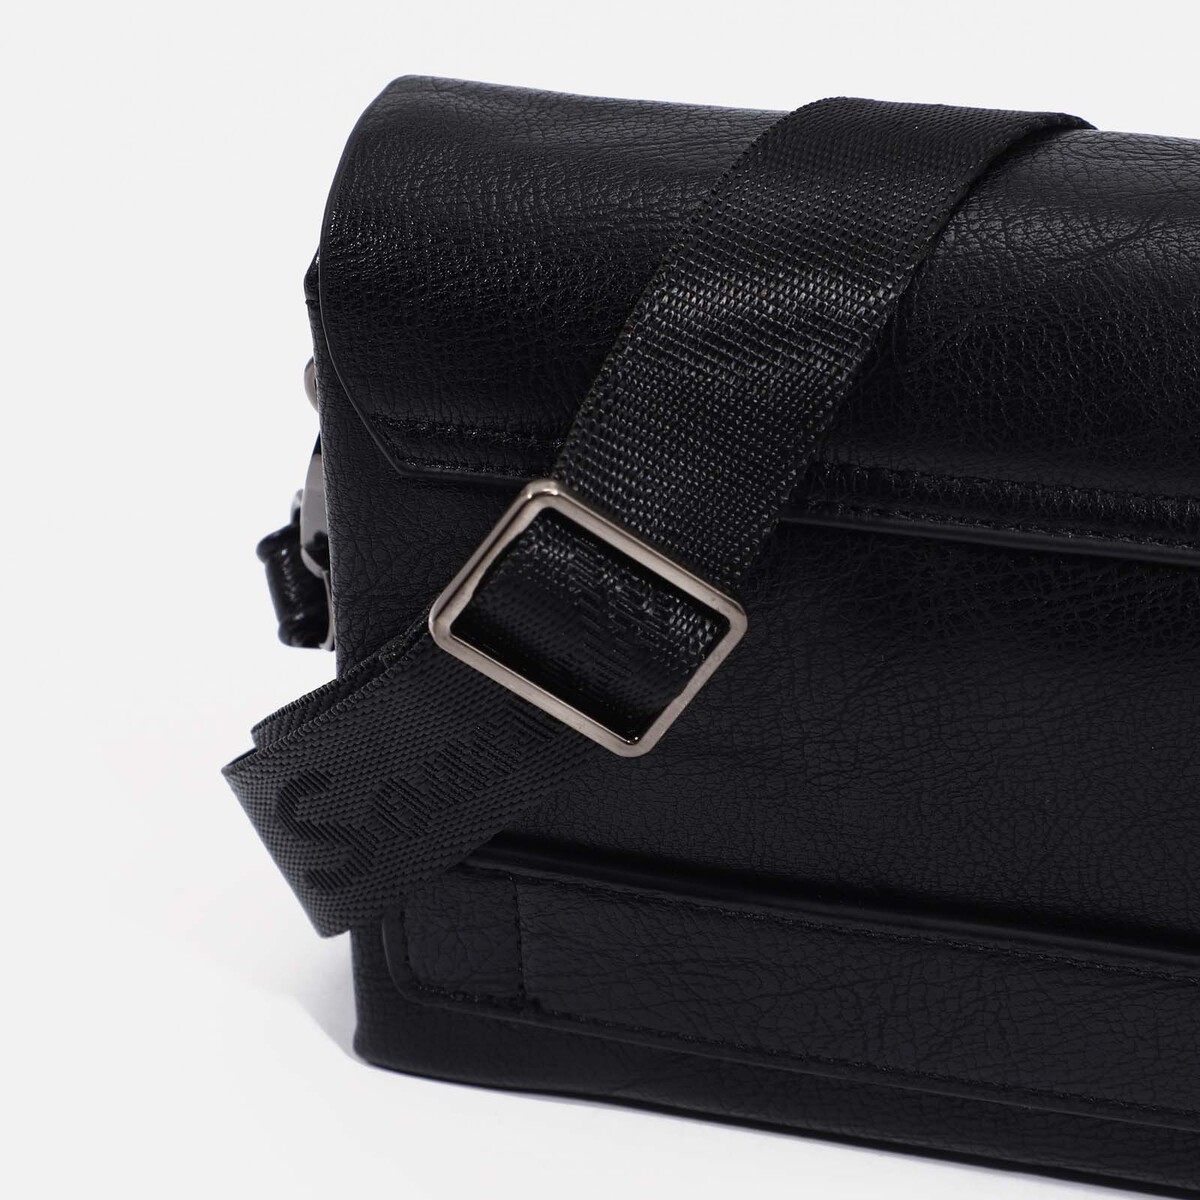 Клатч на молнии, наружный карман, цвет чёрный No brand, размер маленький 02144062 - фото 5